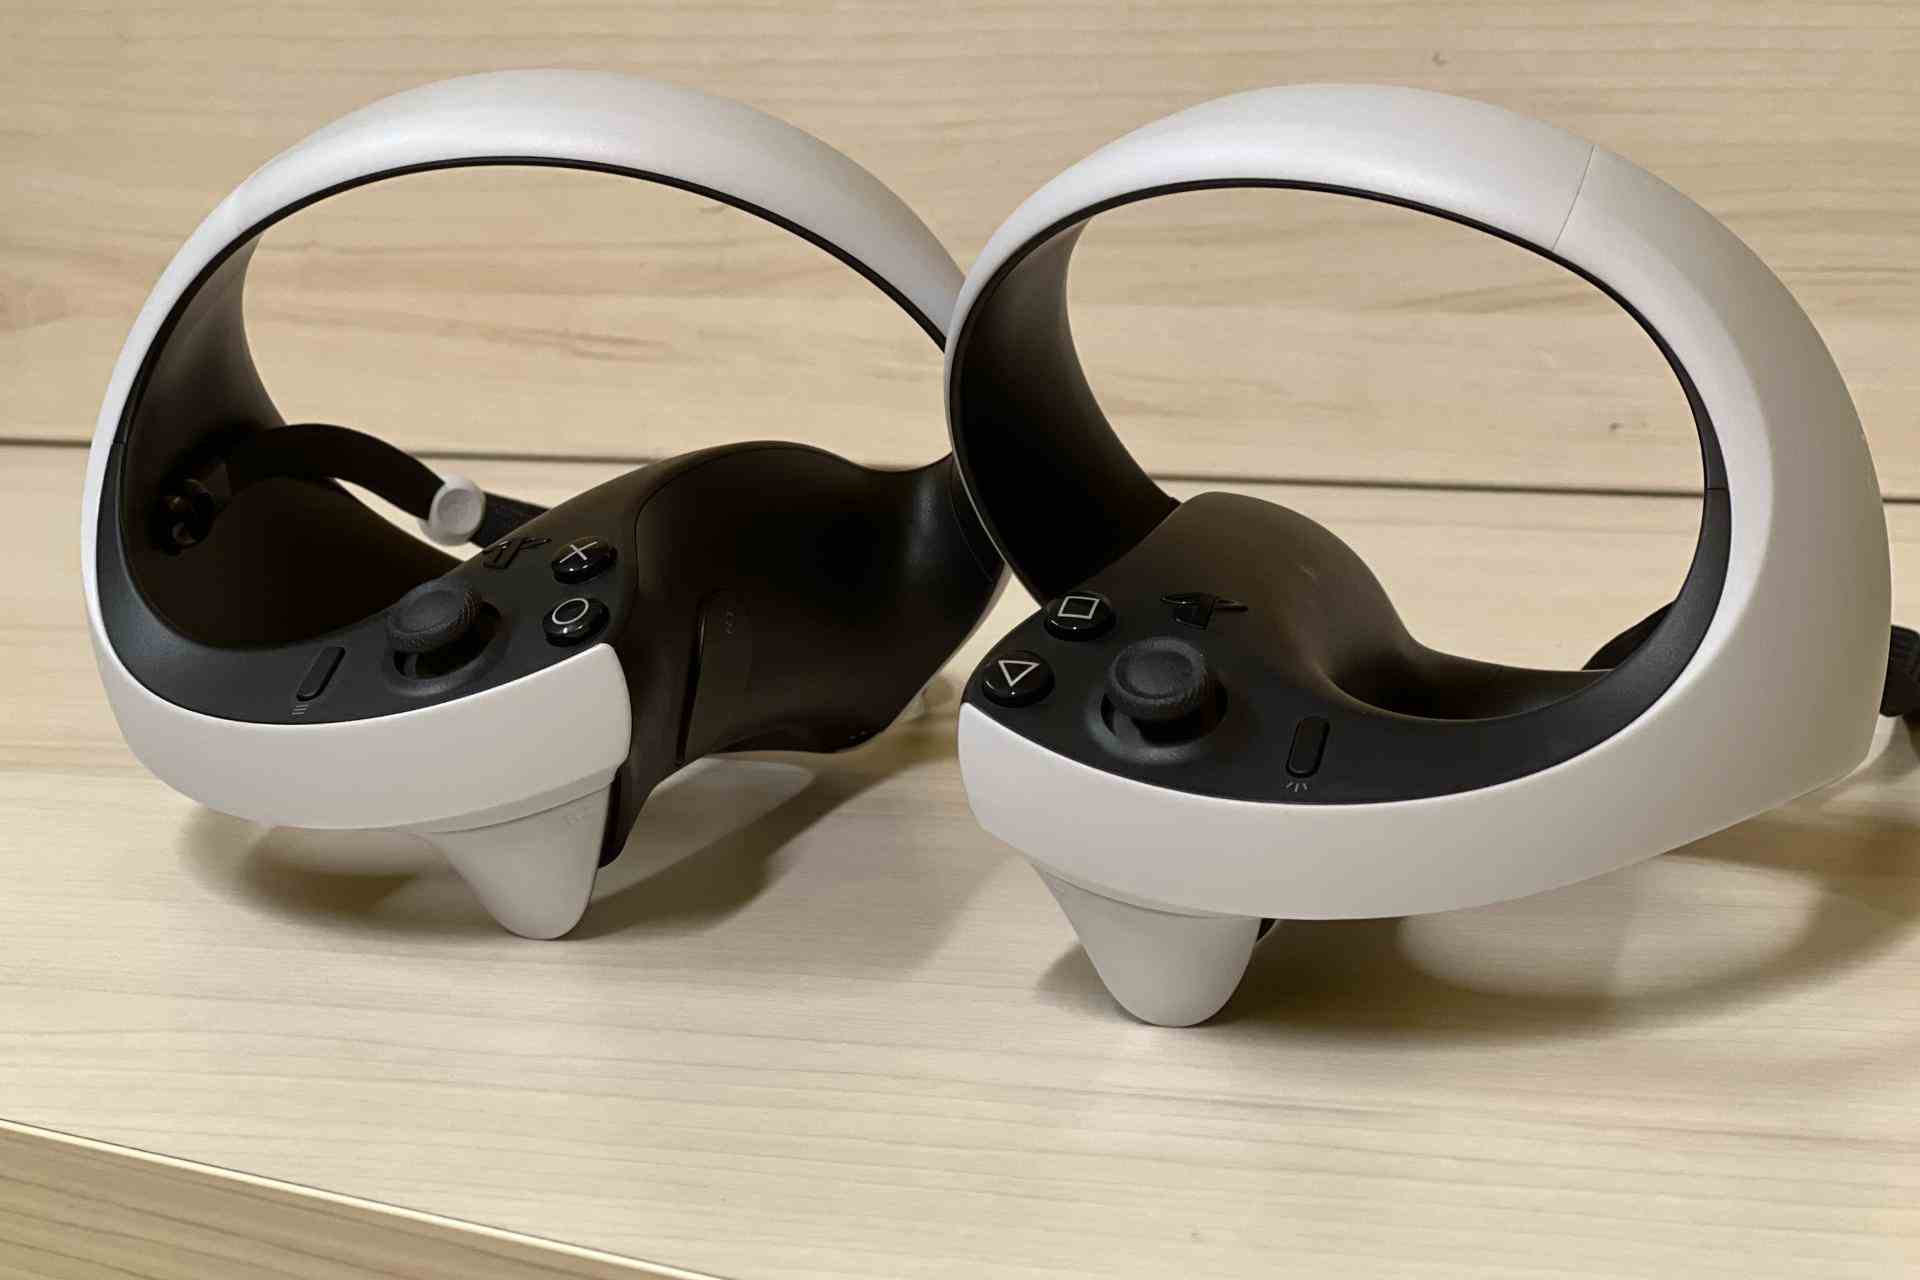 VR 2 Sense kontrol cihazlarını tanımak için gereken kısa süre, bize PlayStation 1'den miras kalan geleneksel kontrol cihazlarının tasarımıyla biçimlendirildiğimizi hatırlatıyor.